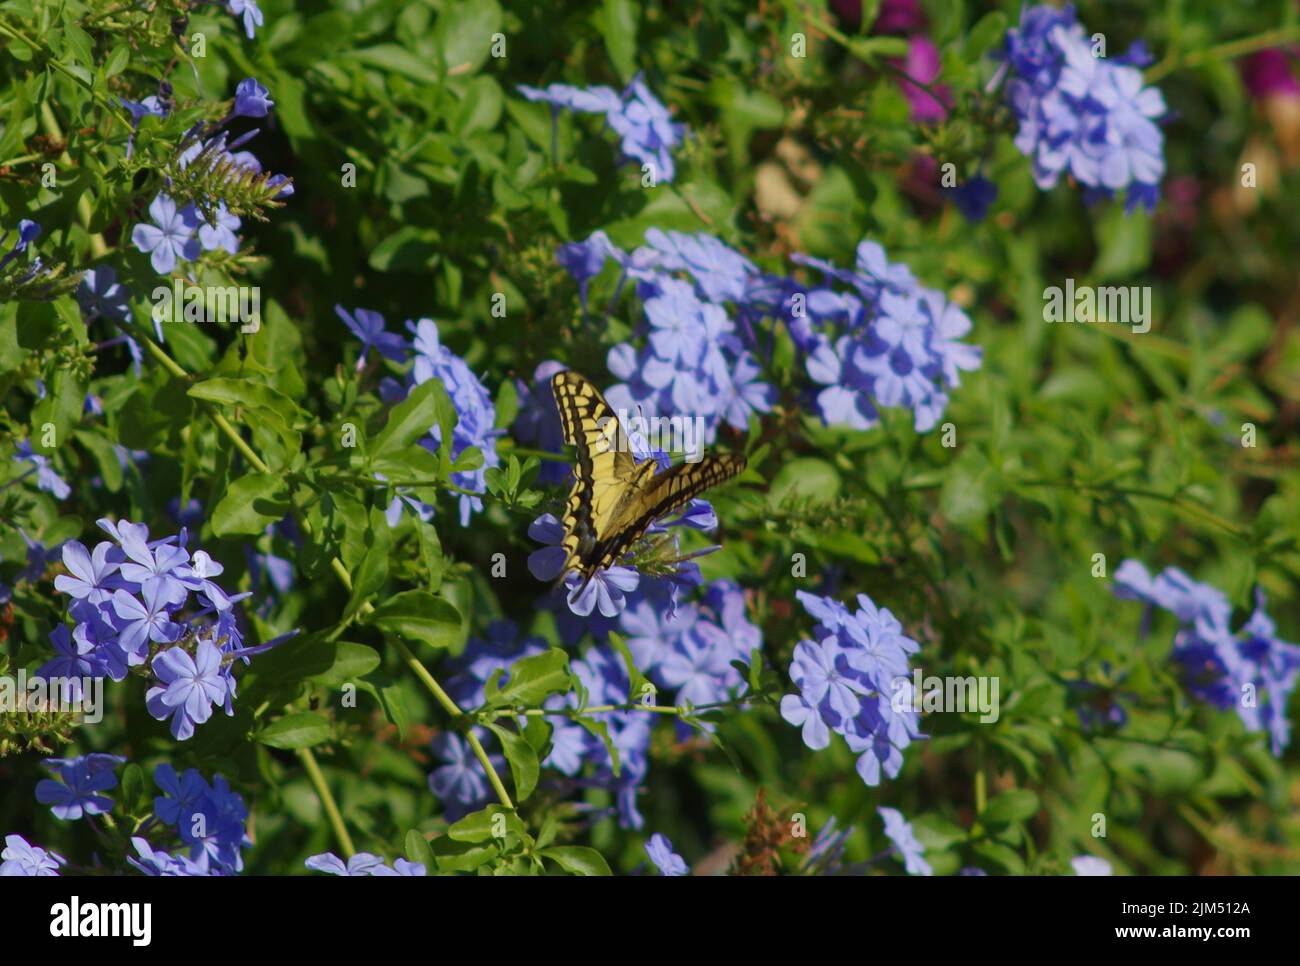 Butterfly in garden Stock Photo